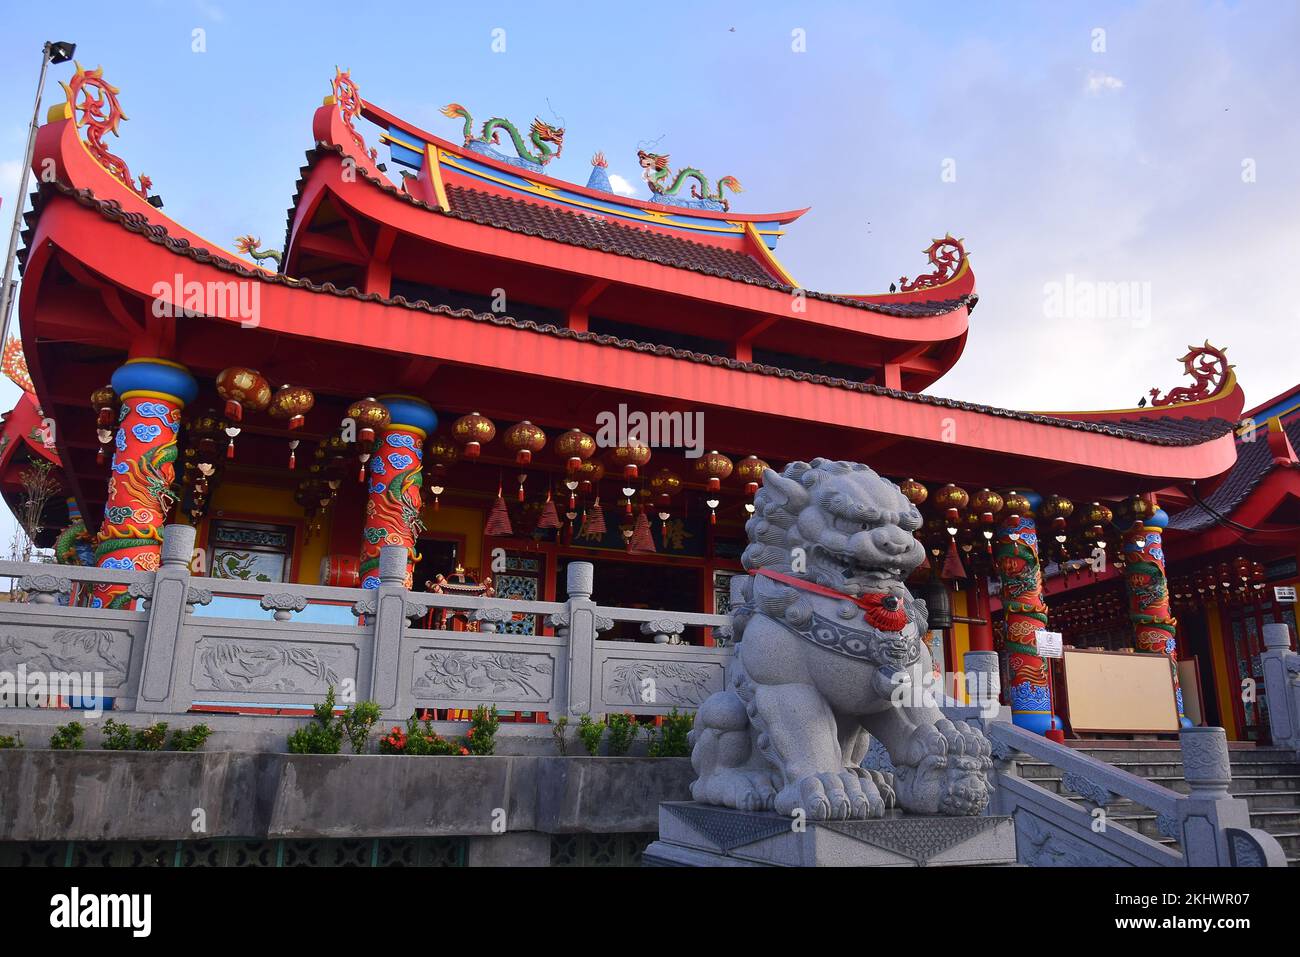 L'architecture de pagode chinoise dominante est rouge et des sculptures de dragon Banque D'Images